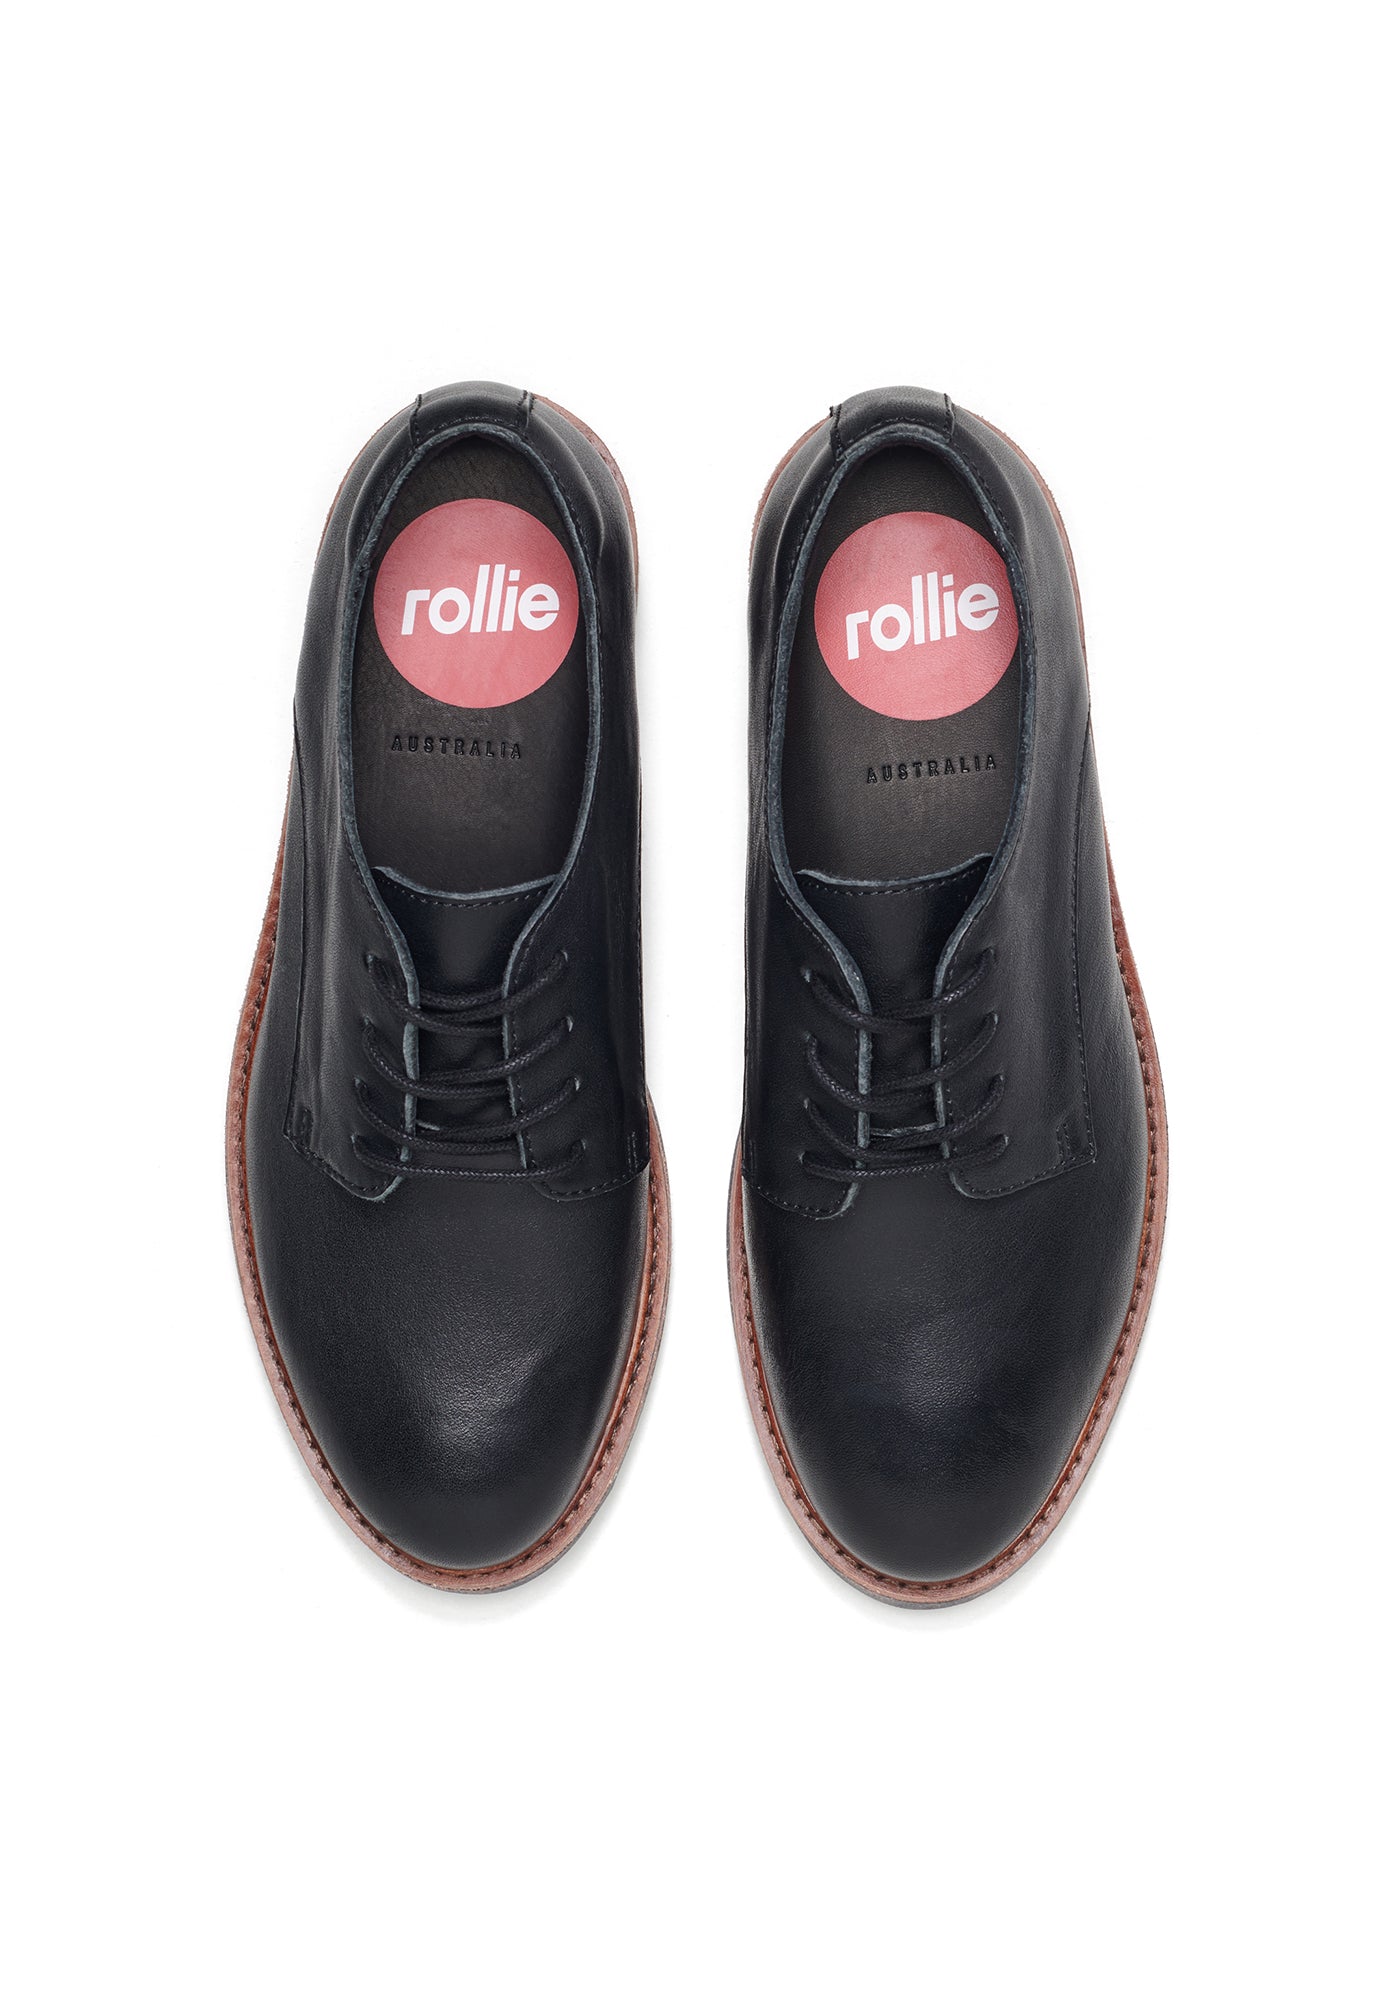 rollie - derby rise - vintage black